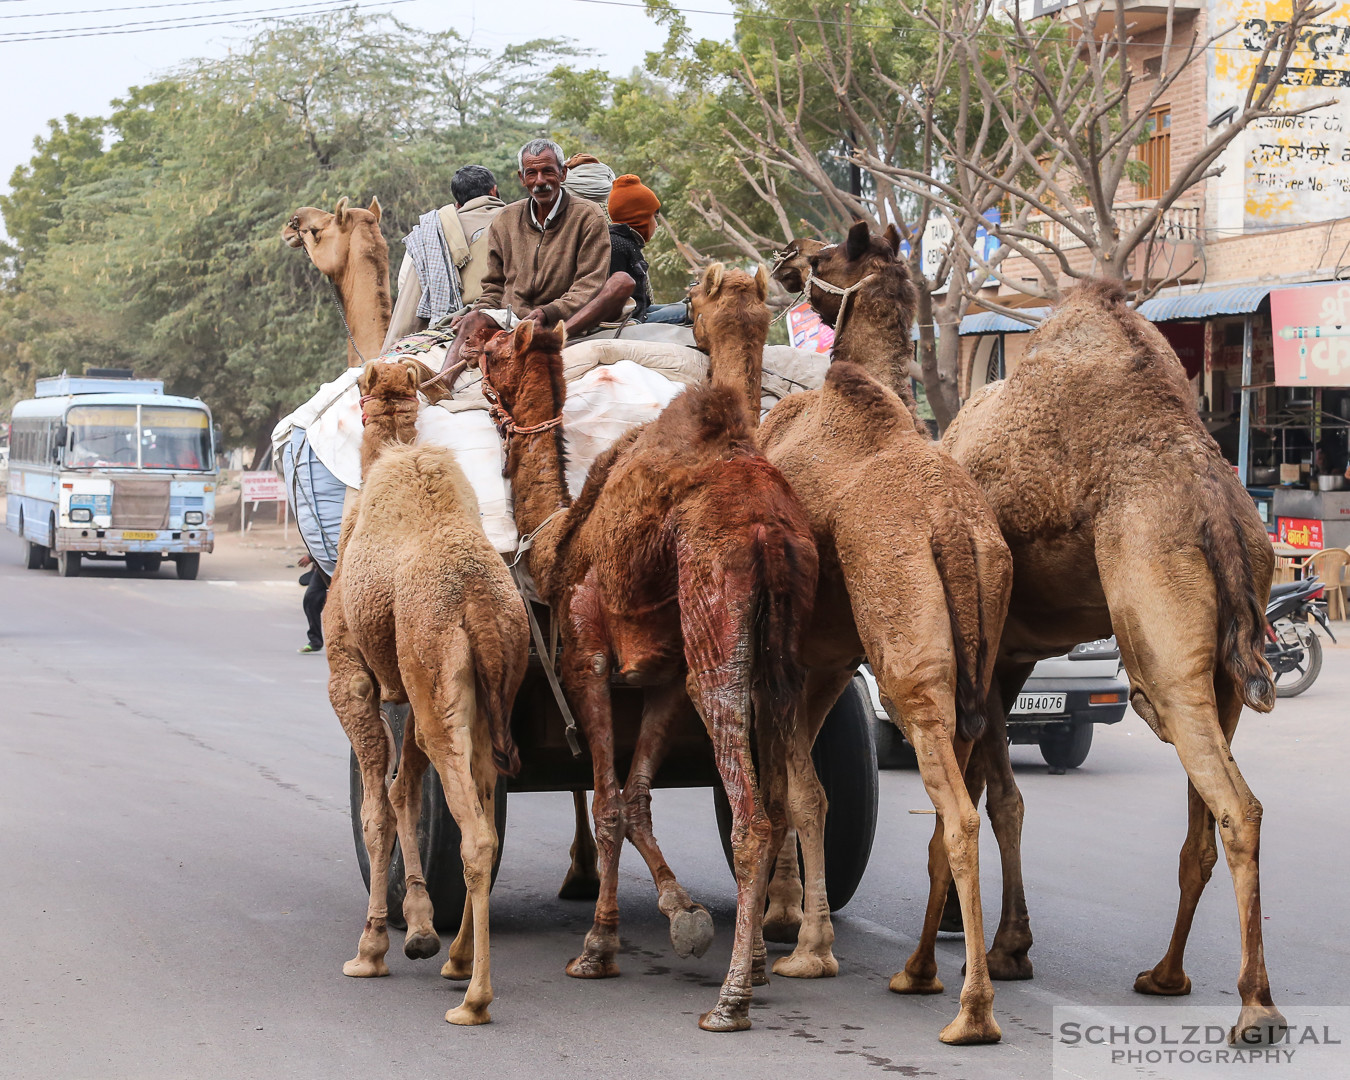 Kamelhändler, Bikaner Rajasthan, Indien